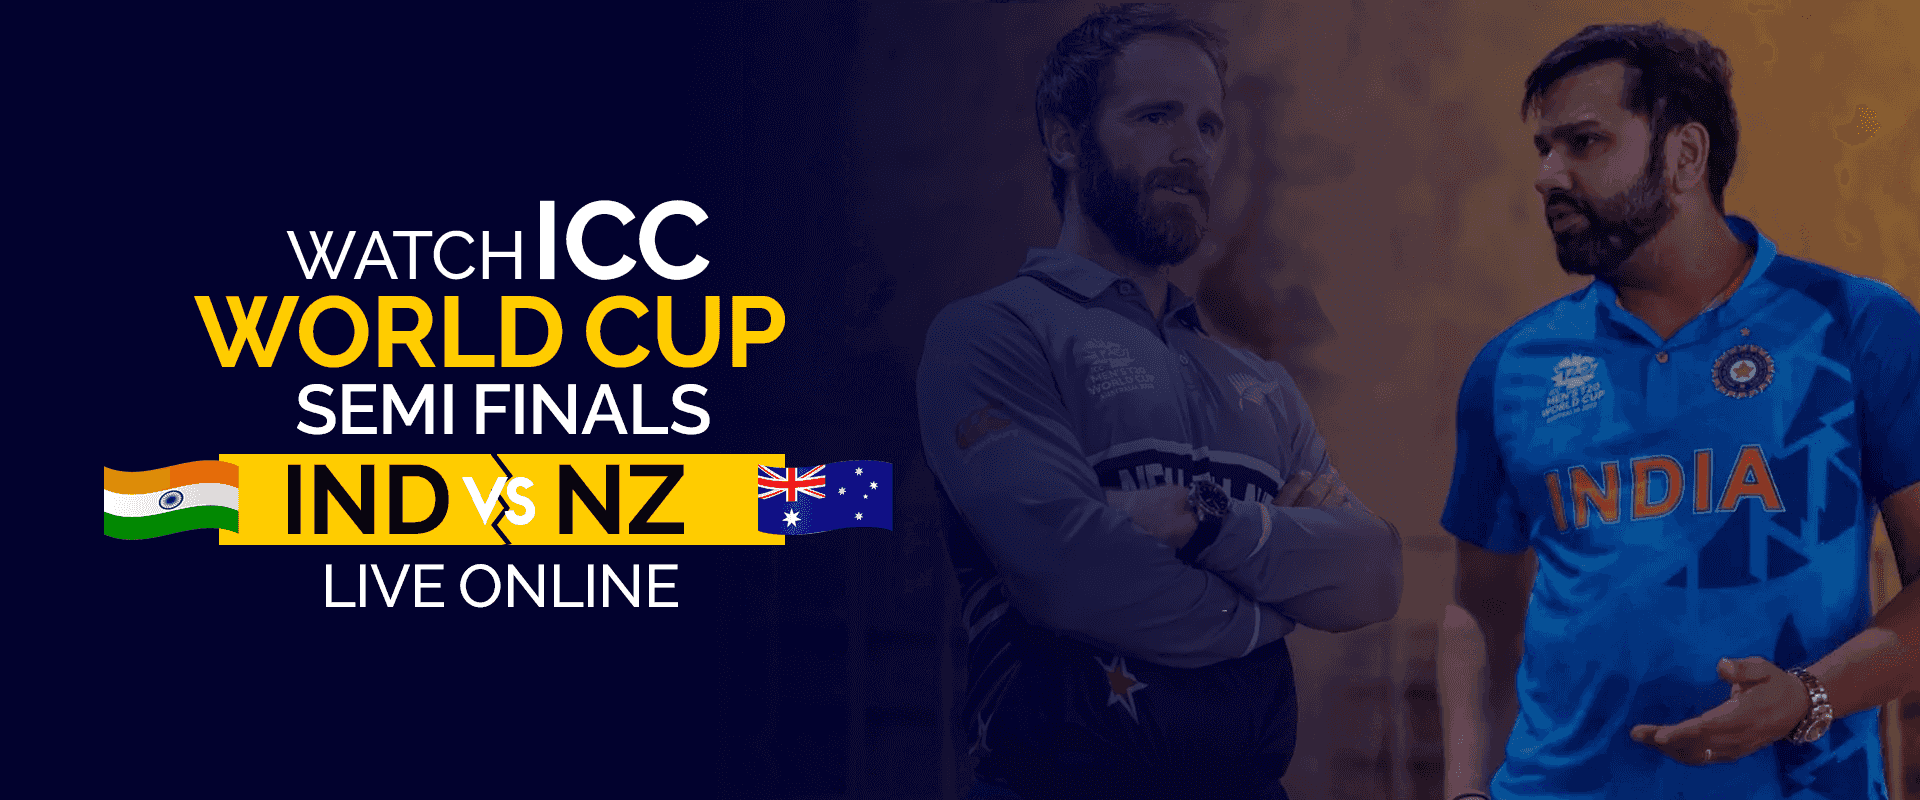 Смотрите полуфиналы чемпионата мира ICC между IND и NZ в прямом эфире онлайн